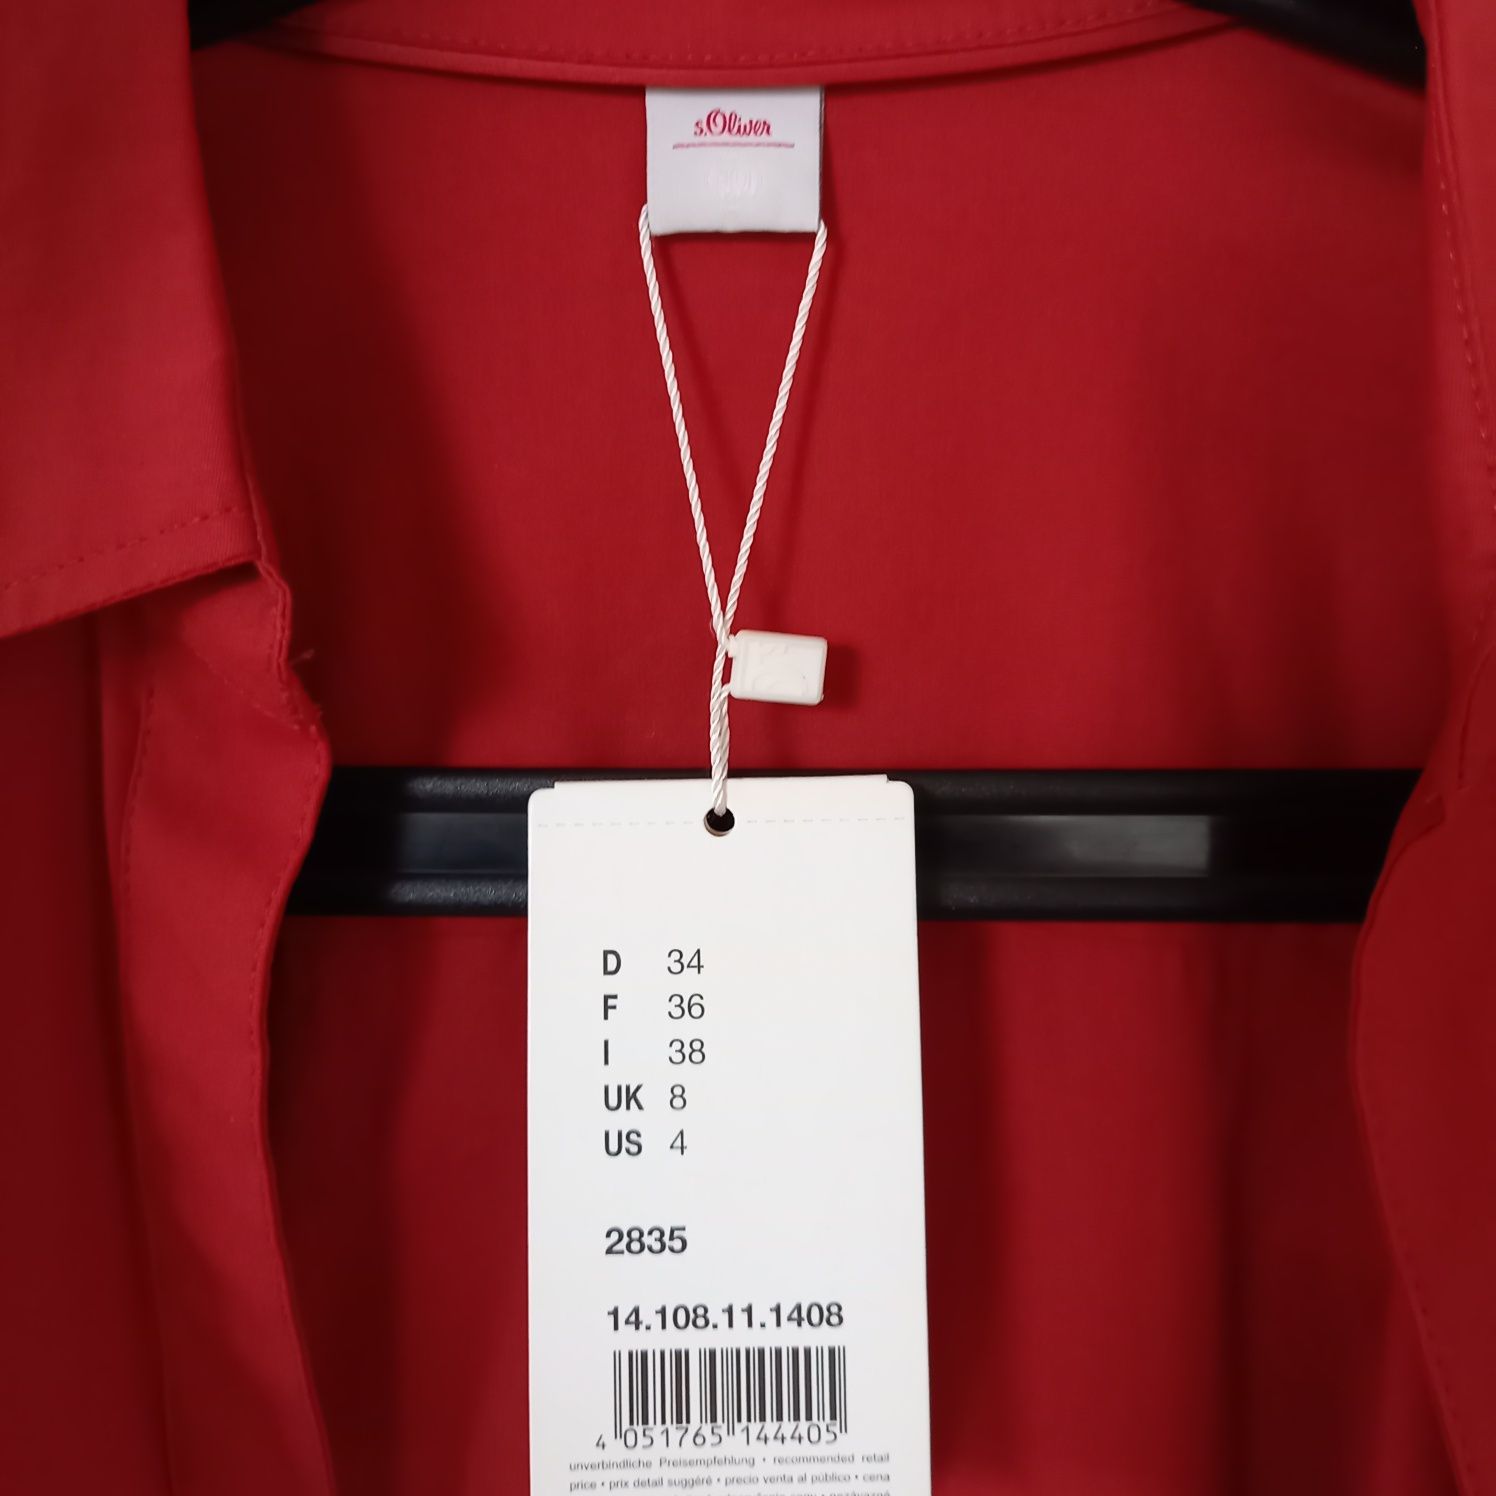 Nowa, czerwona damska koszula s. Olivier r. 38